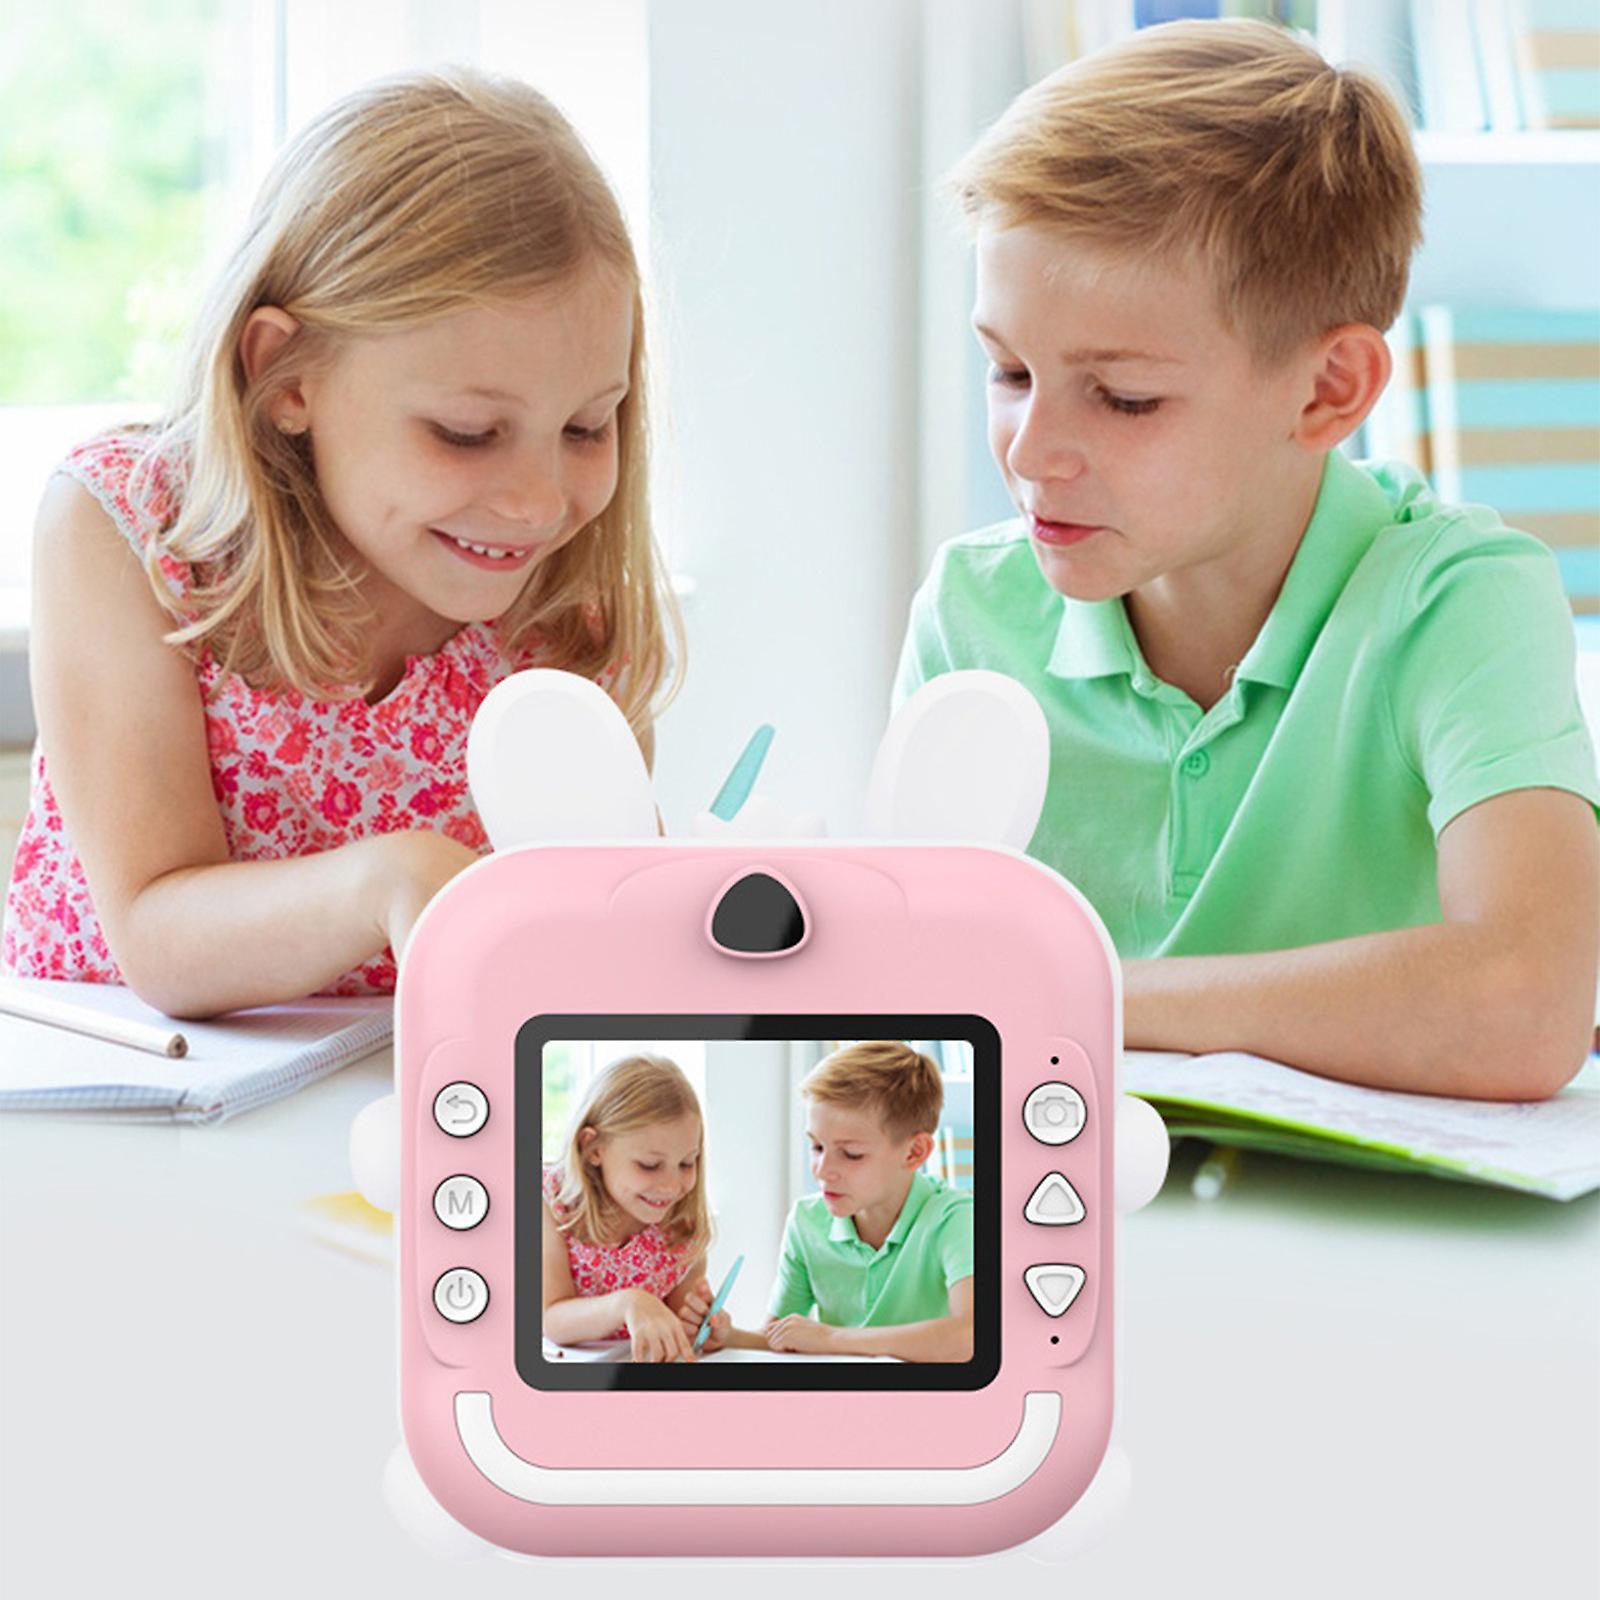 Aparat foto copii cu functie de printare, Vala® Q5, model Iepuras, Rezolutie 24Mpx 1080P, Display LCD Color 2.4", 3 role hartie incluse, Roz